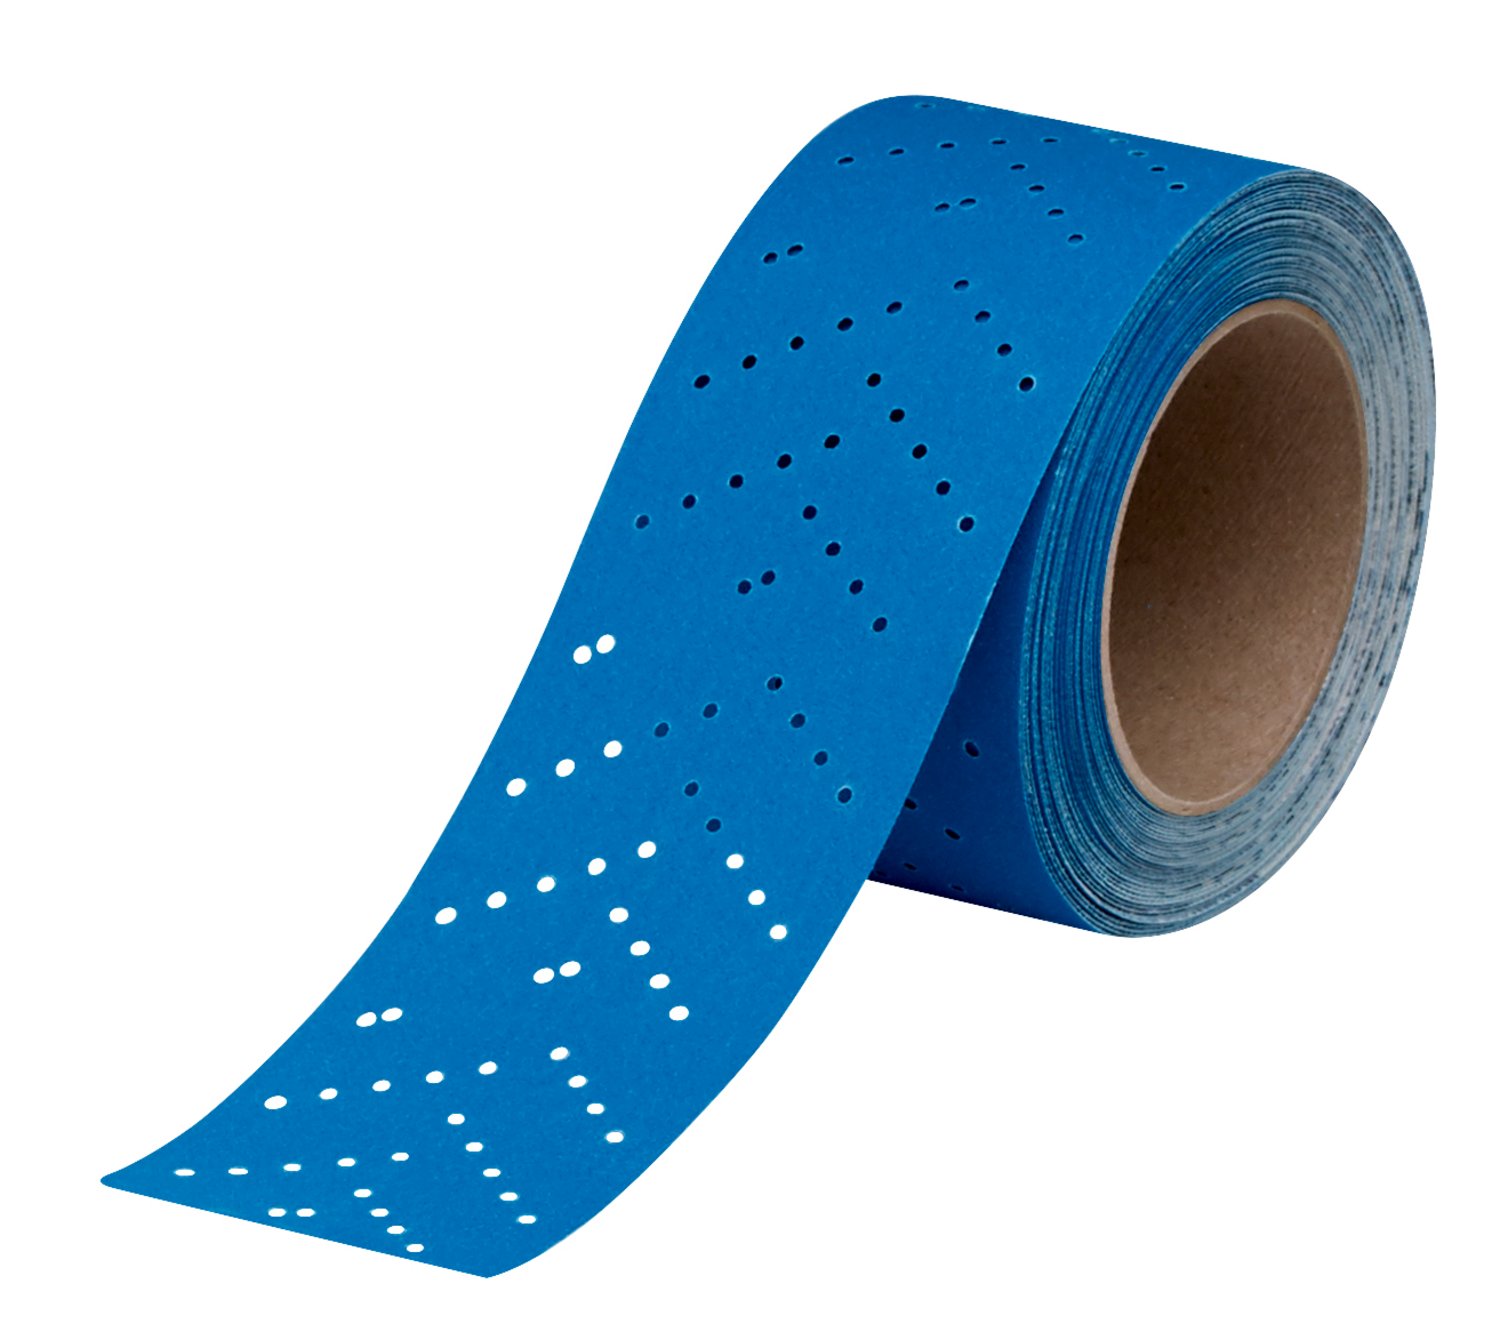 7100091038 - 3M Hookit Blue Abrasive Sheet Roll Multi-hole, 36189, 120, 2.75 in x
13 y, 4 cartons per case